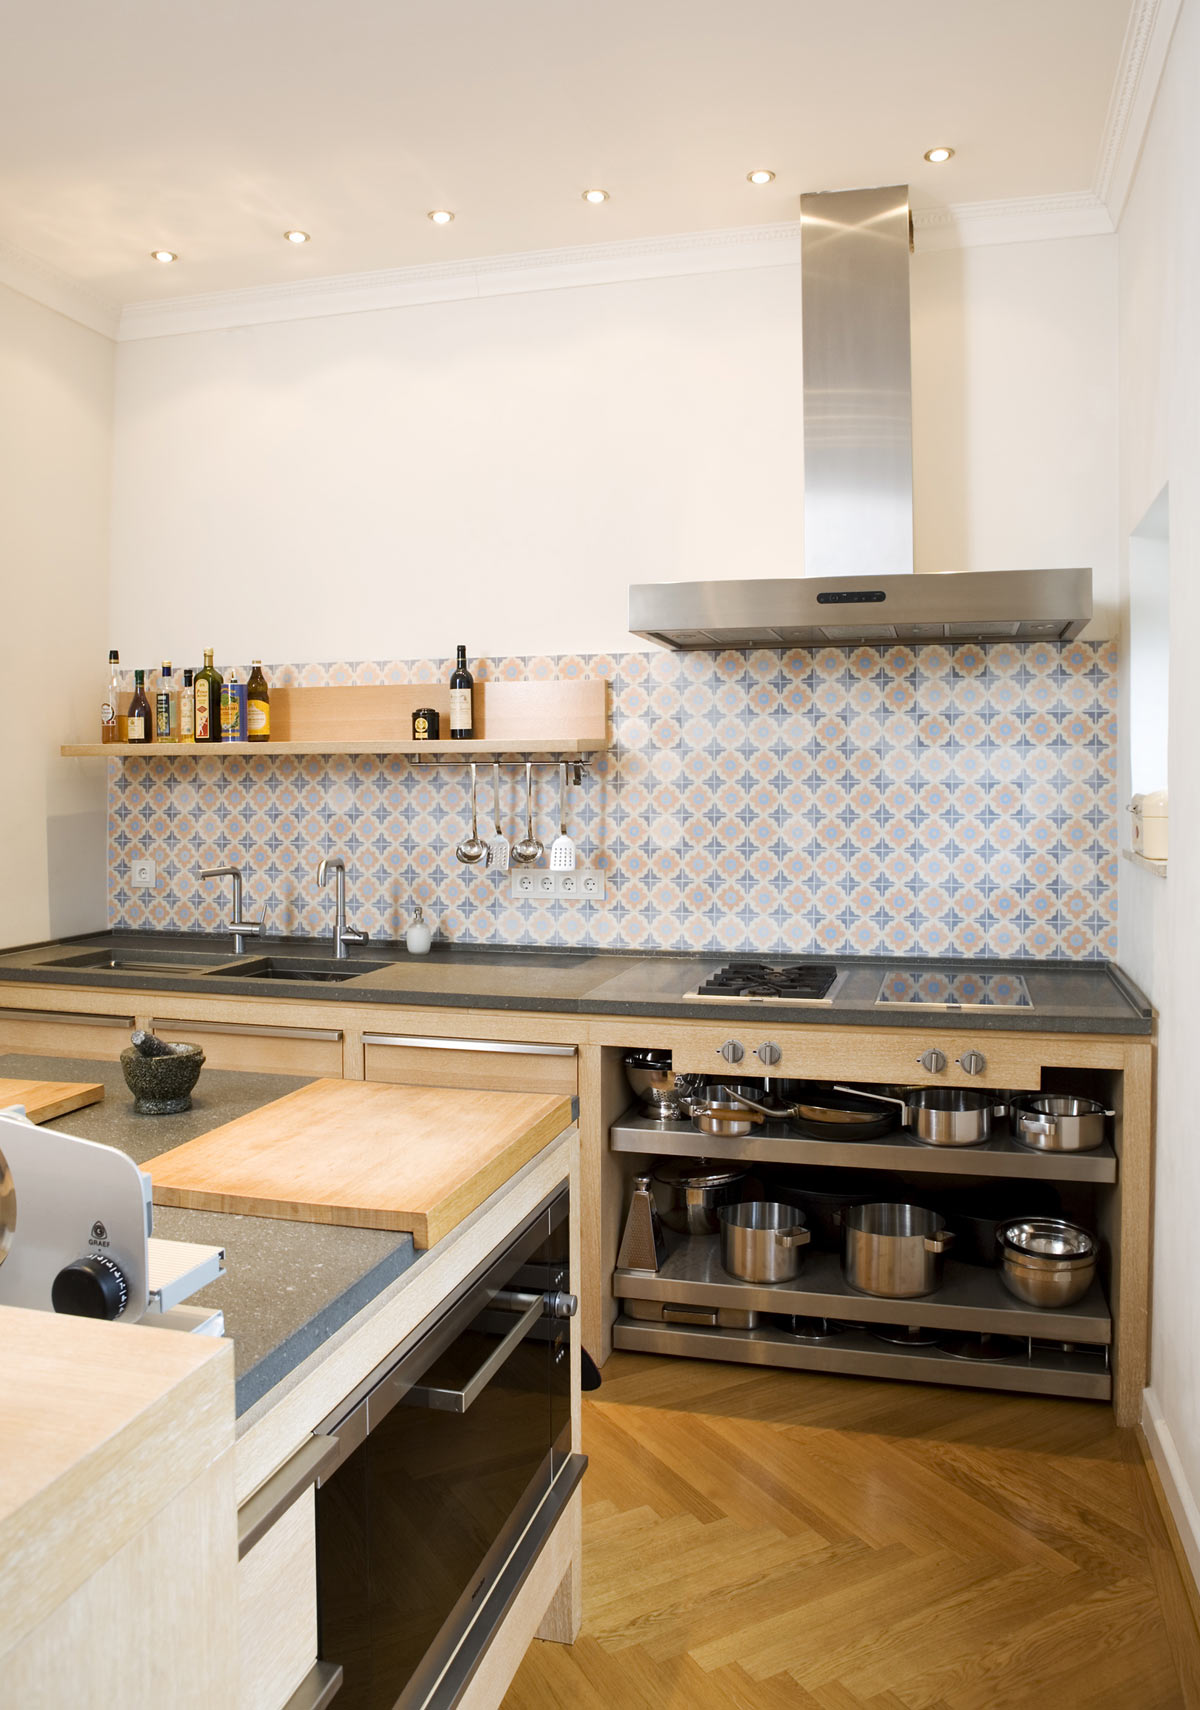 Die geölten Eiche Oberflächen geben der Küche zusammen mit den Basaltsteinplatten und den Zementfliesen von VIA eine warme und naturelle Ausstrahlung